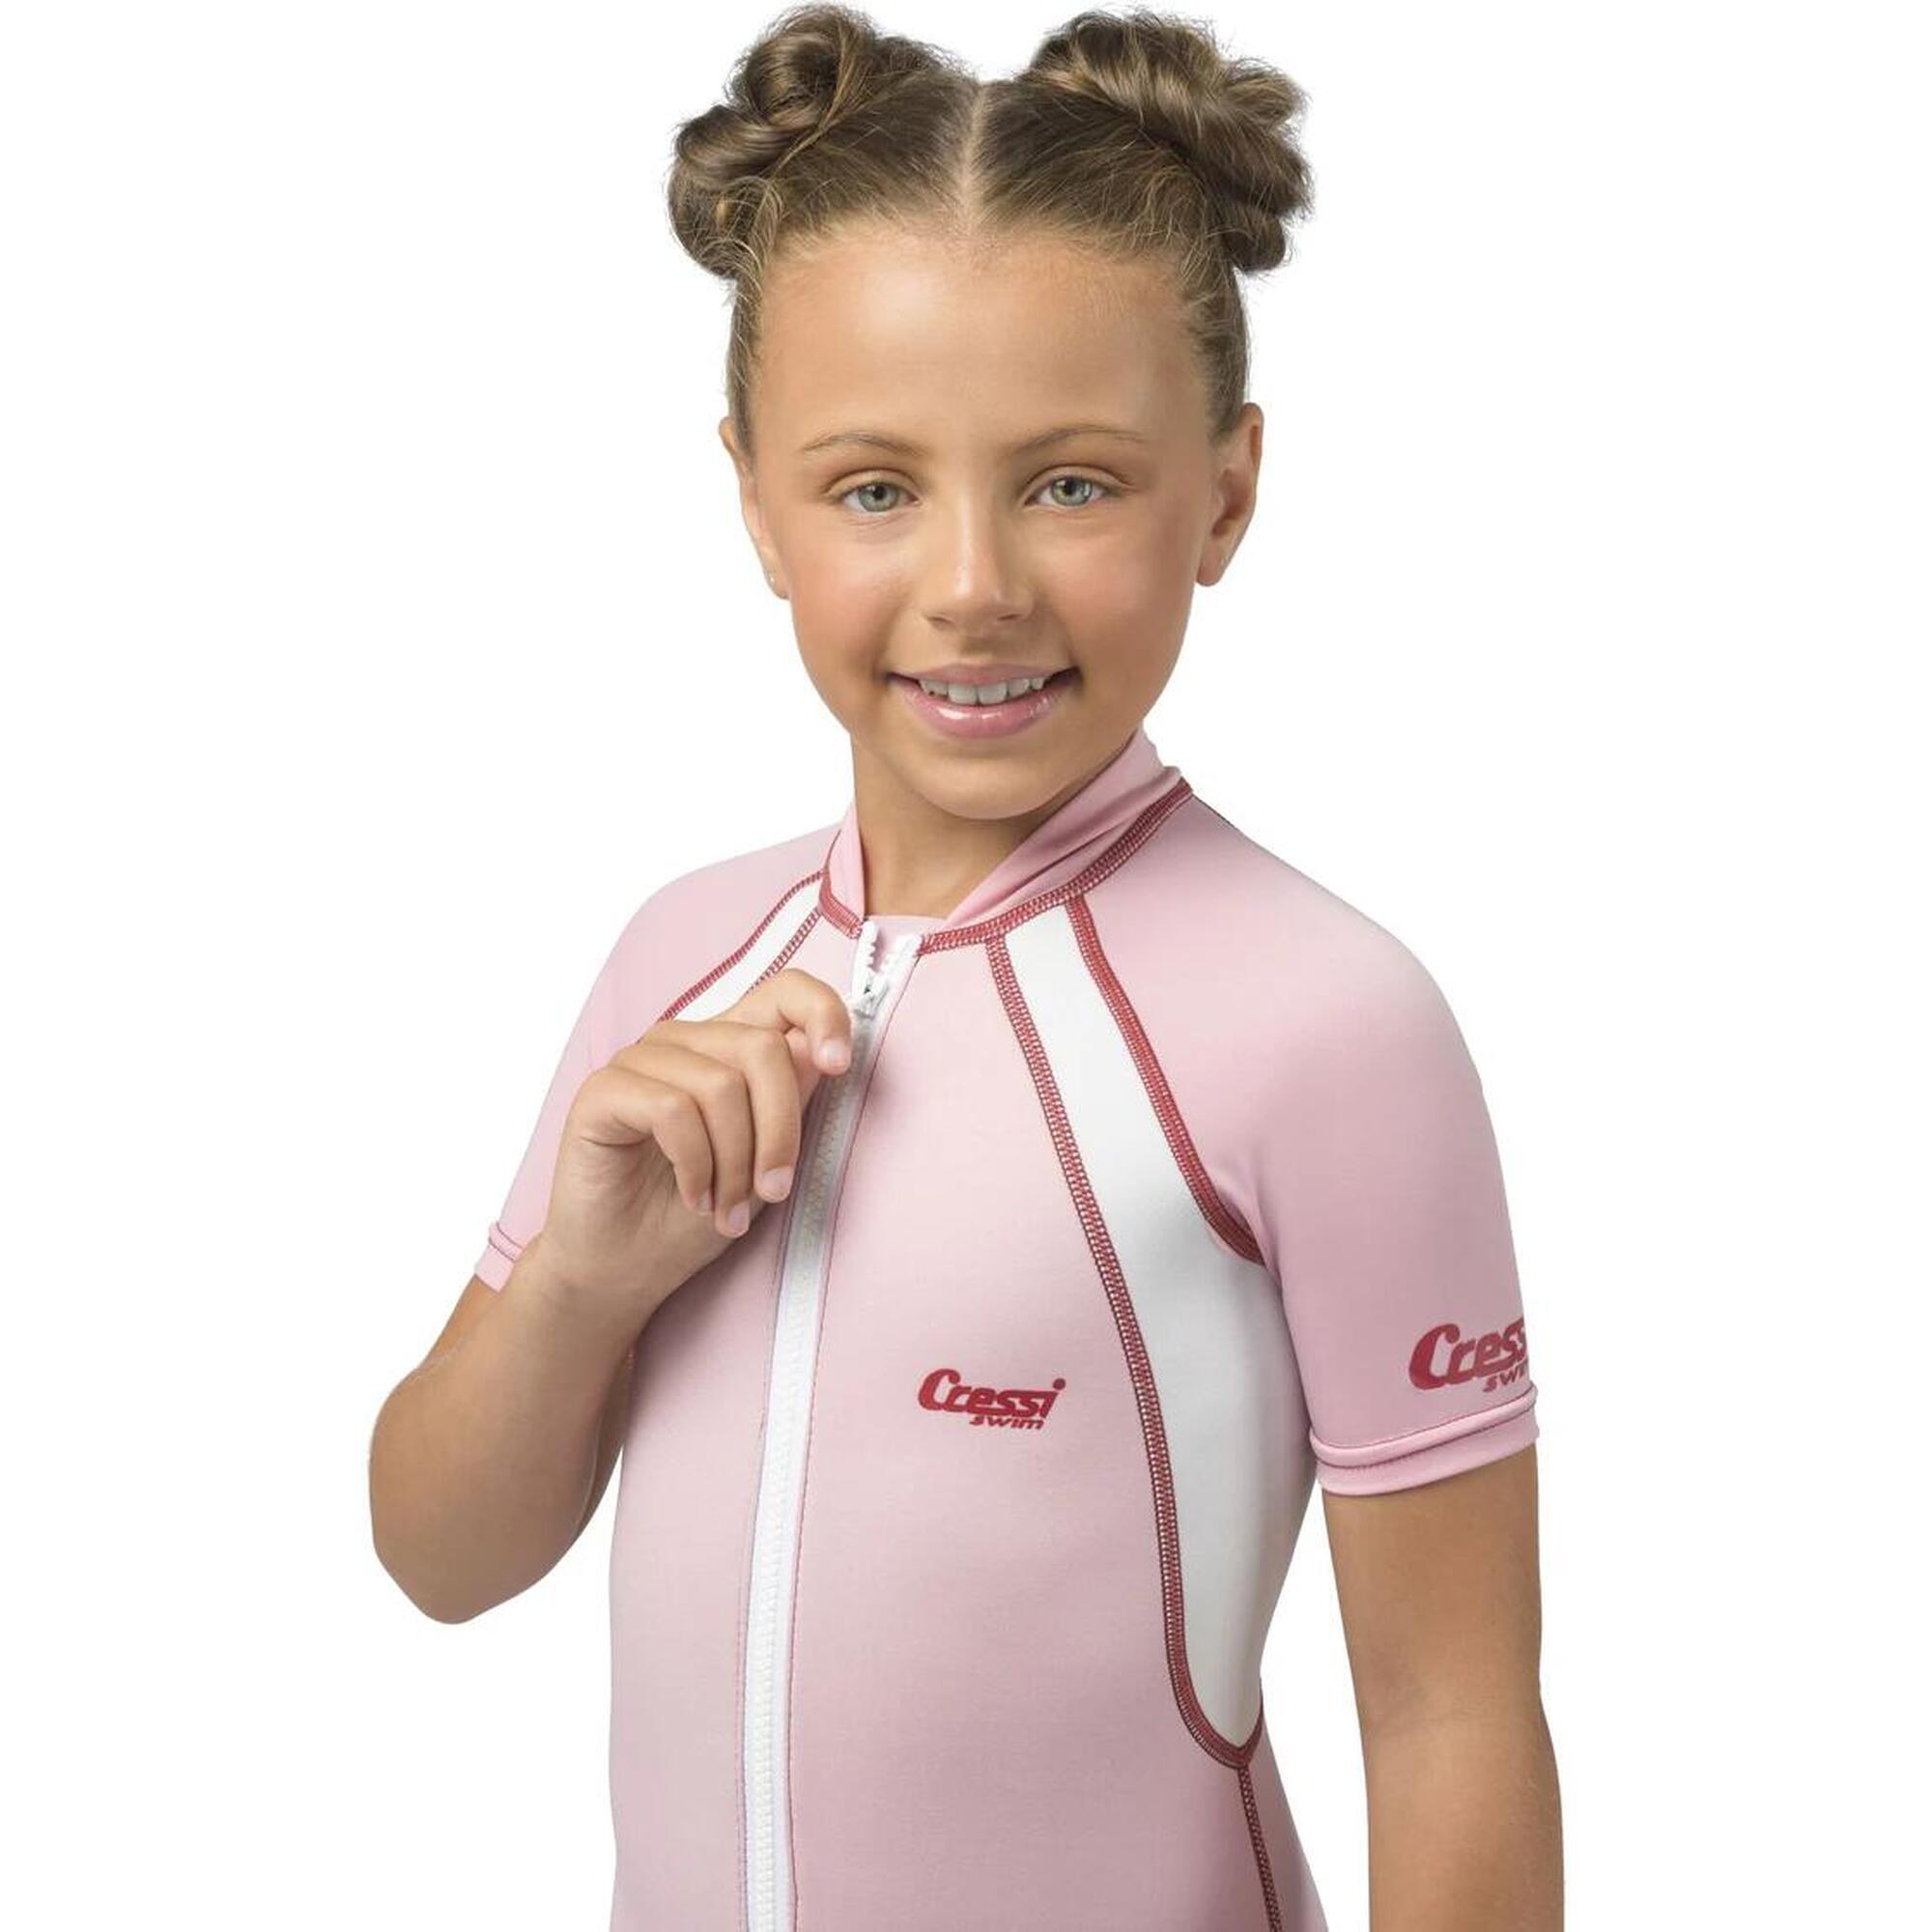 兒童泳衣短款 1.5mm - 粉色 - 2XL